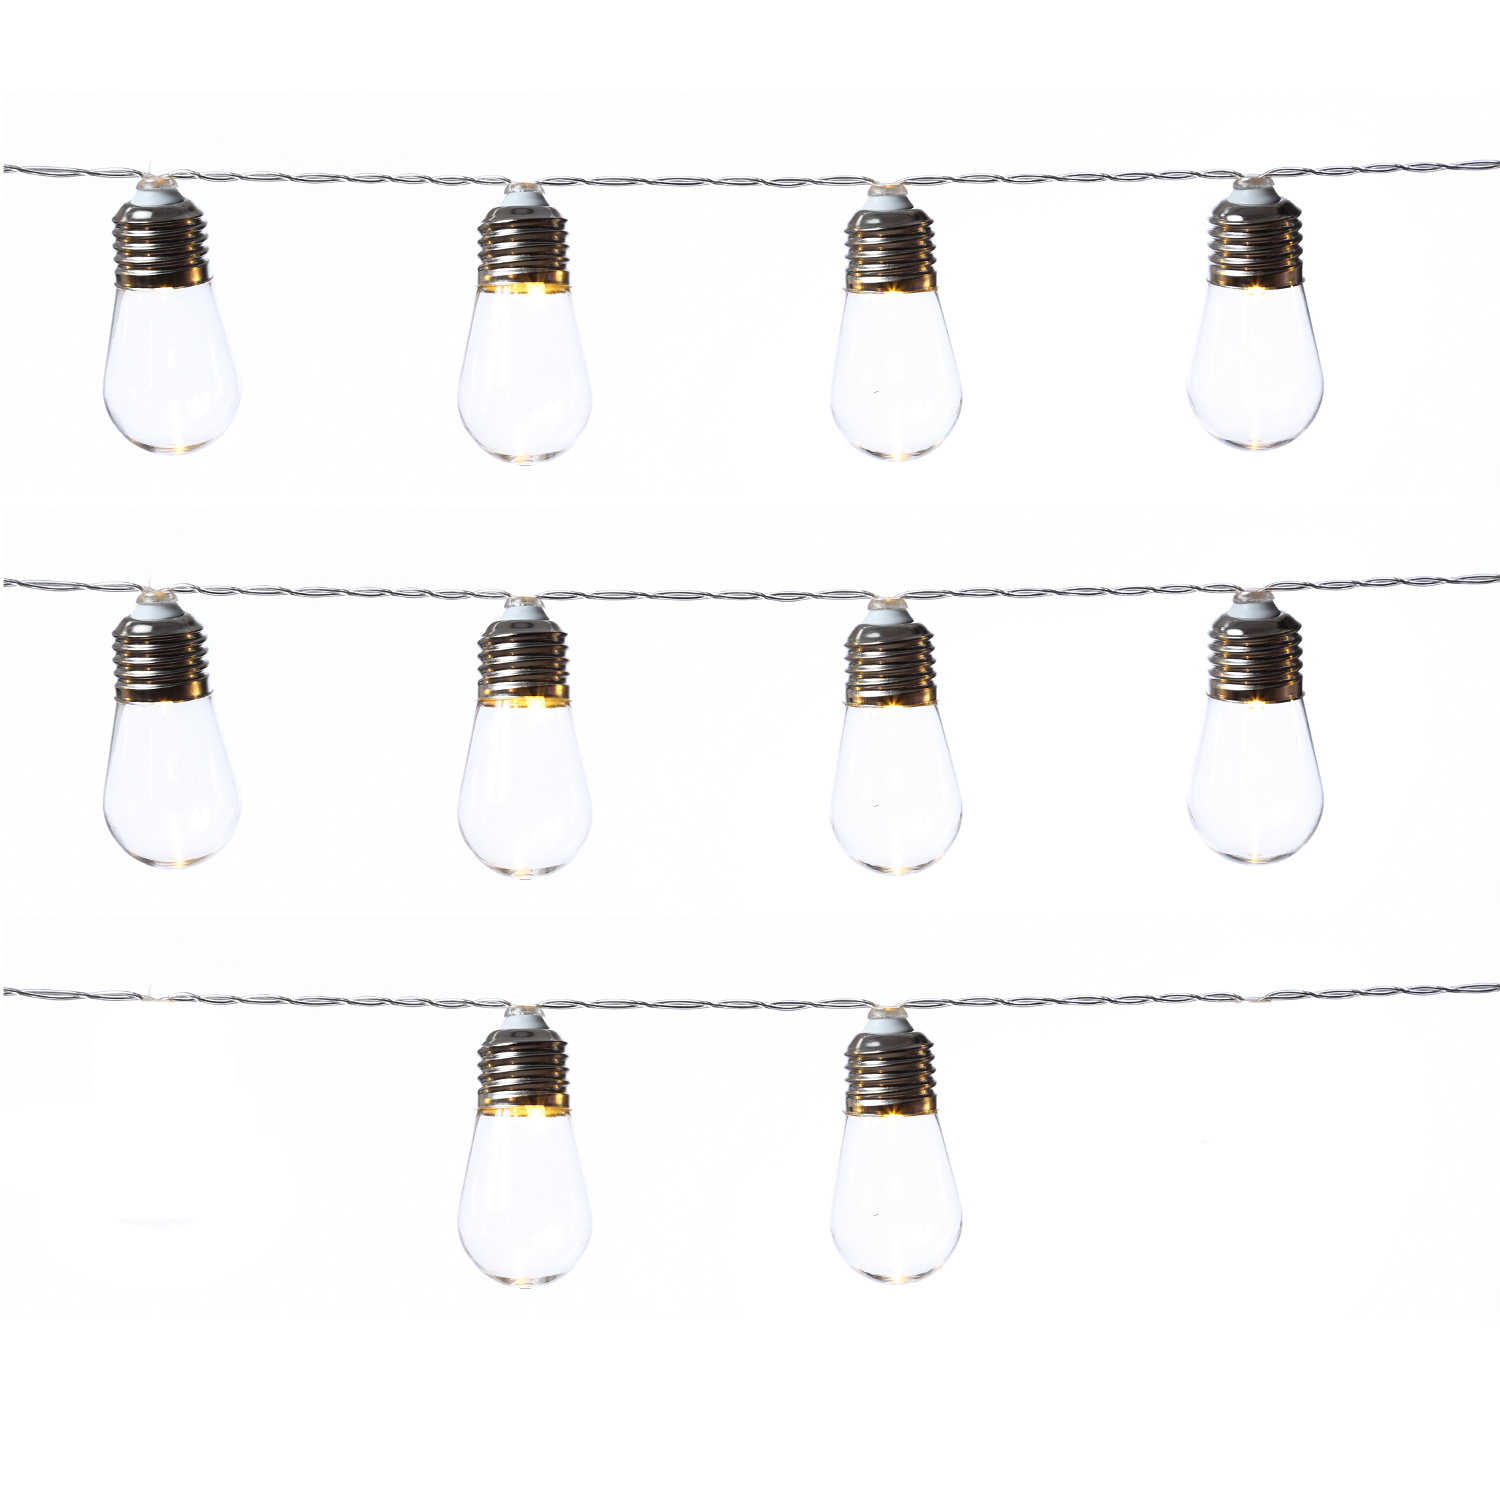 LED Lichterkette - 10 transparenten Glühbirnen - 10 warmweiße LED - L: 90cm - Batterie